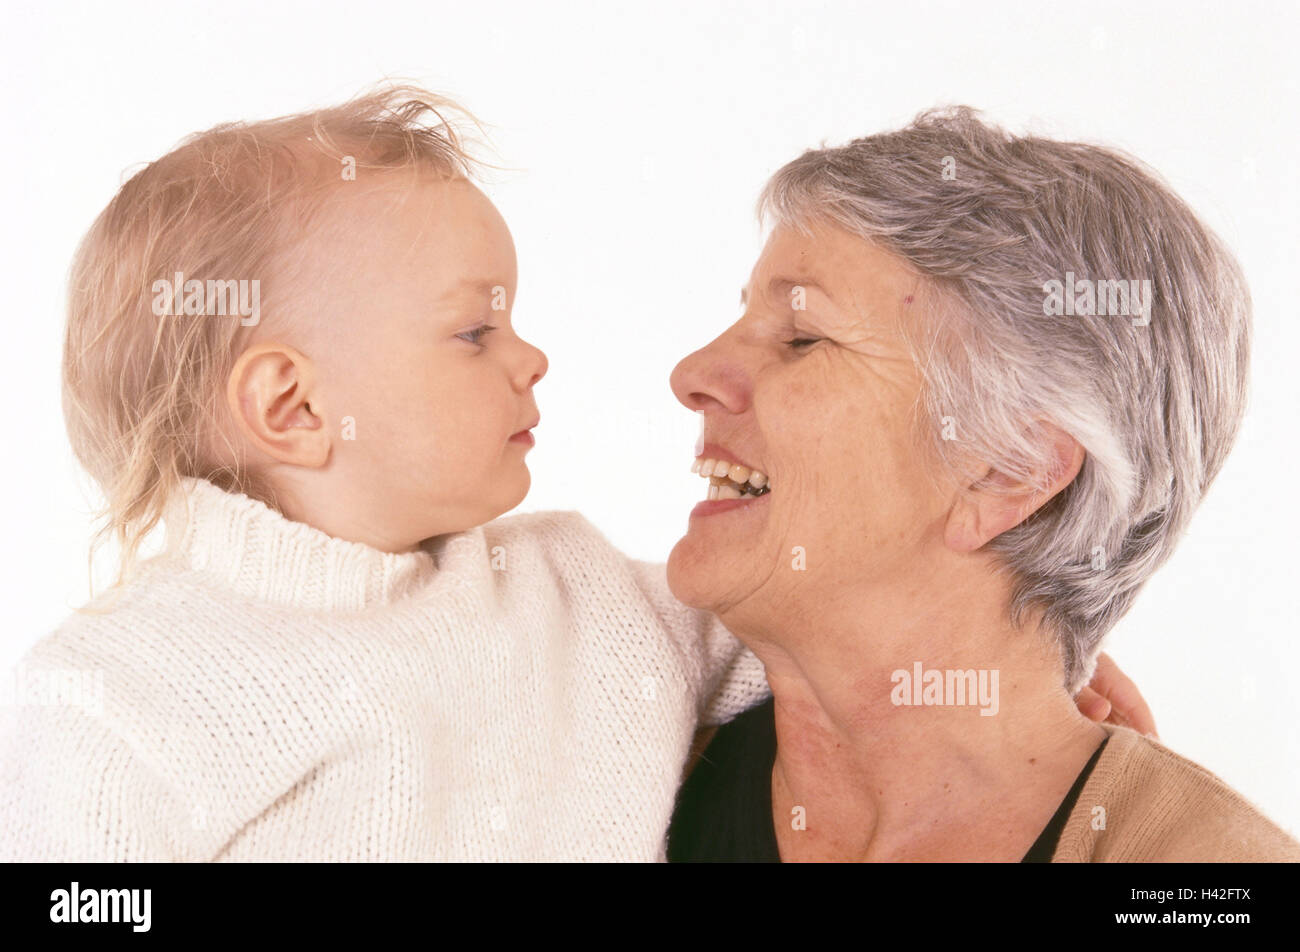 Großmutter, Enkelin, Lächeln, Blickkontakt, Profil, Frau, 60 Jahre, grauhaarige, Kind, Kleinkind, Enkelin, Mädchen, 2 Jahre, Umarmung, Vertrauen, Nähe, Zuneigung, glücklich, Generationen, zwei Liebe, lachen Stockfoto